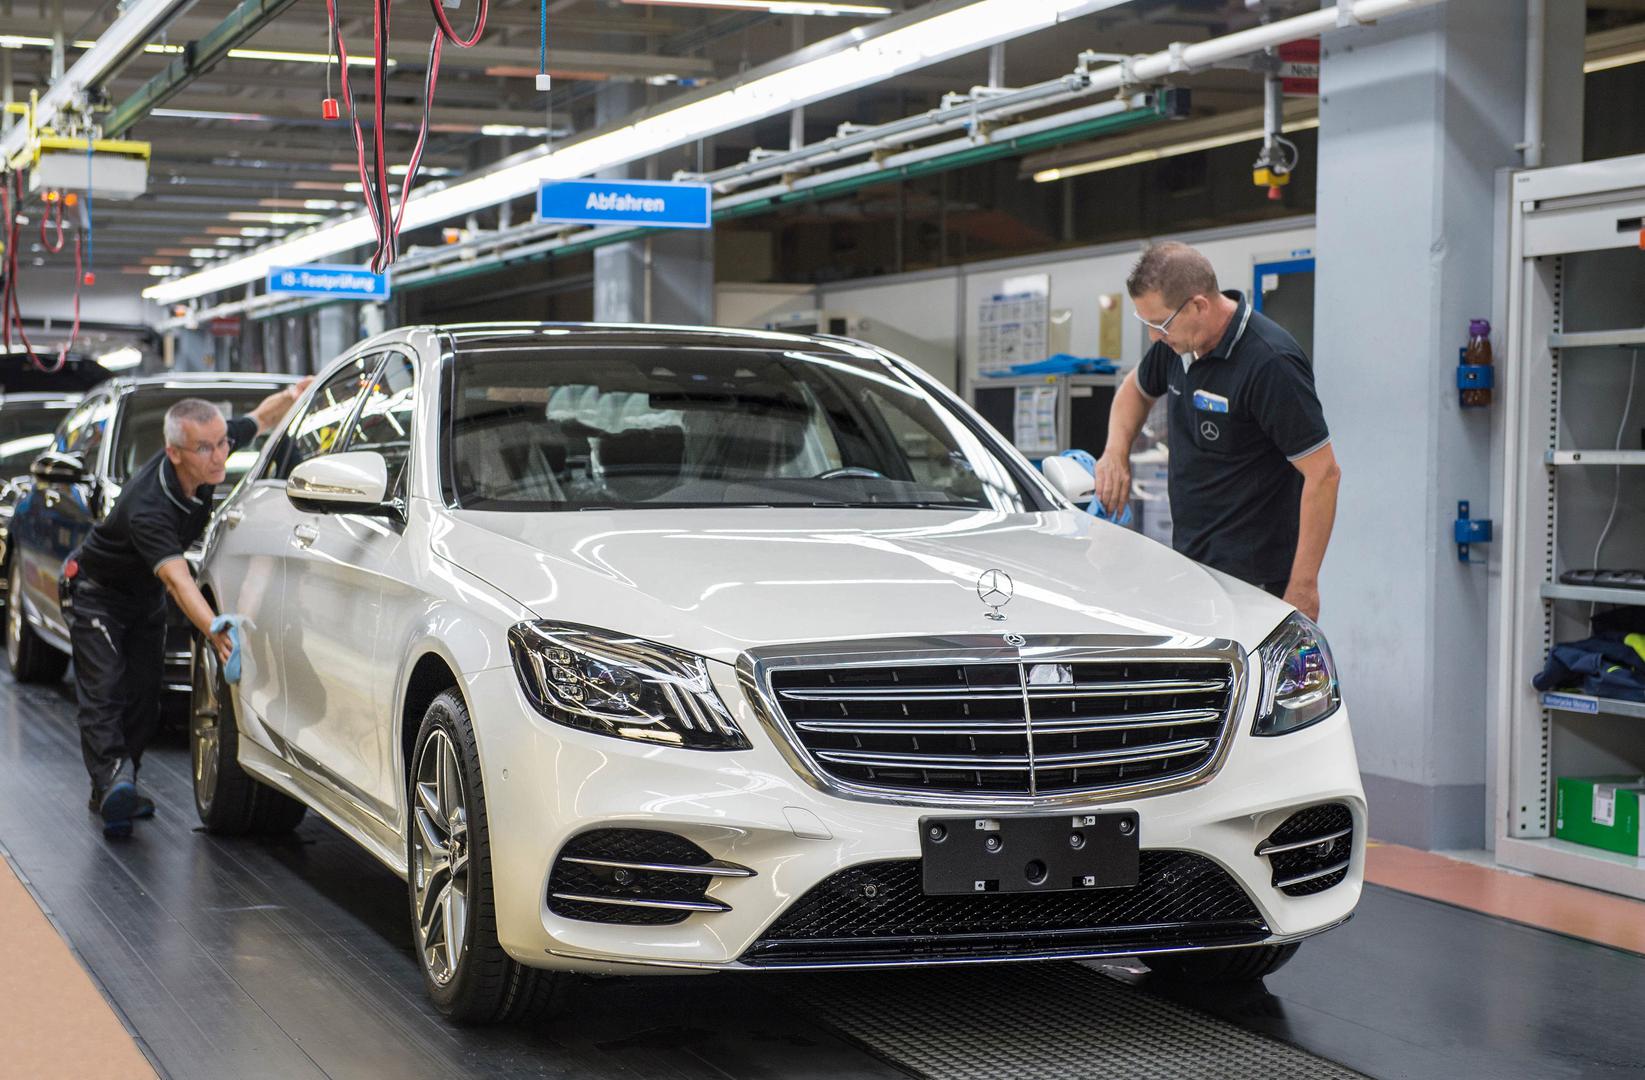 Mercedes-Benzova tvornica
u Sindelfingenu je najtradicionalnije proizvodno postrojenje Daimler AG-a. Kontrolirat će proizvodnju S i E klase